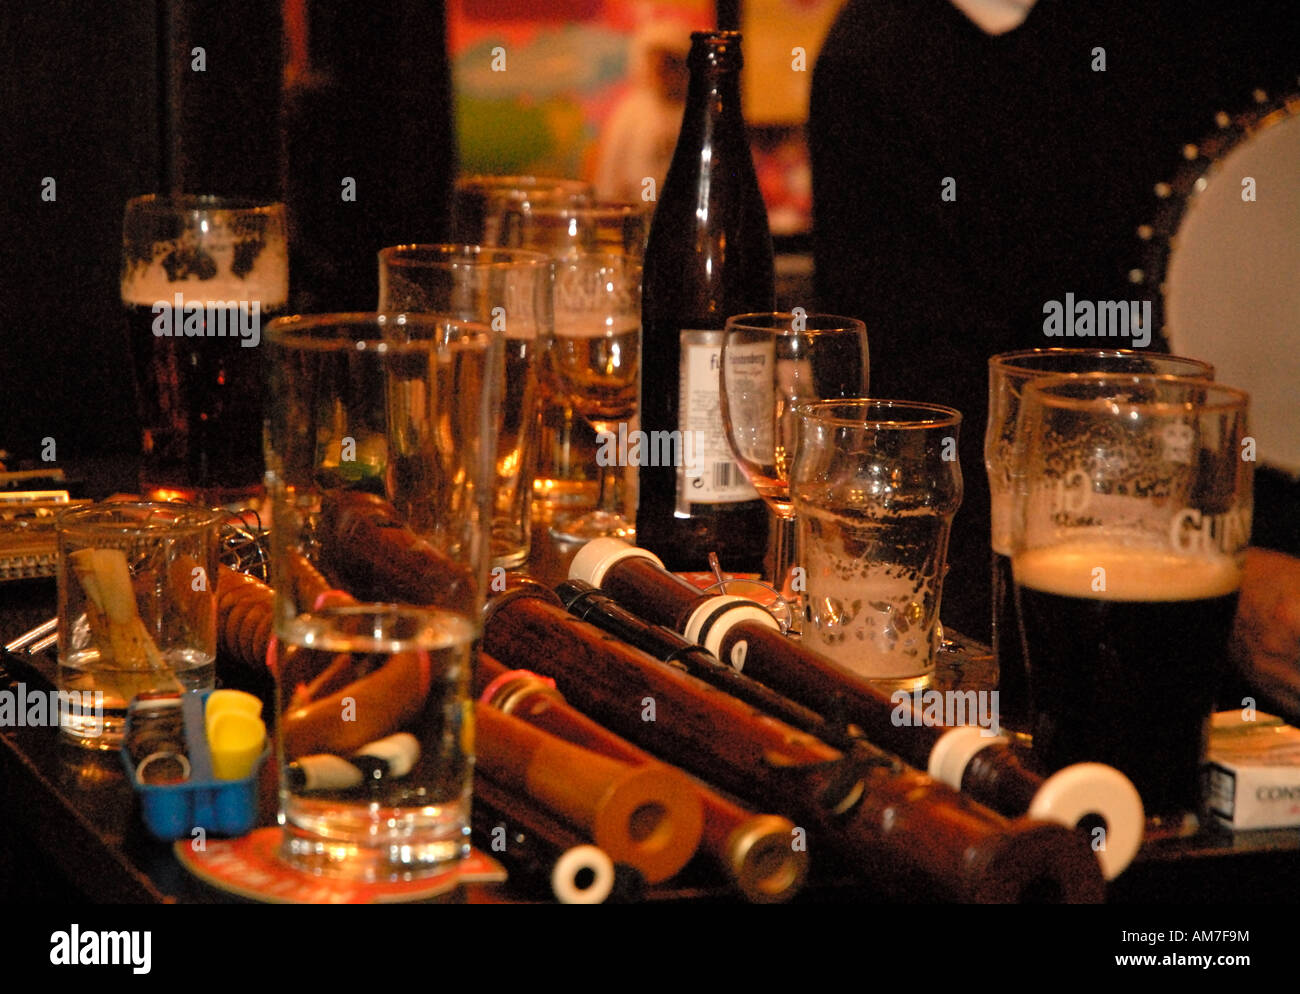 Sandys Glocke Volksmusik Sitzung Edinburgh Schottland - Musikinstrument und Pint auf Biere auf Tisch Stockfoto